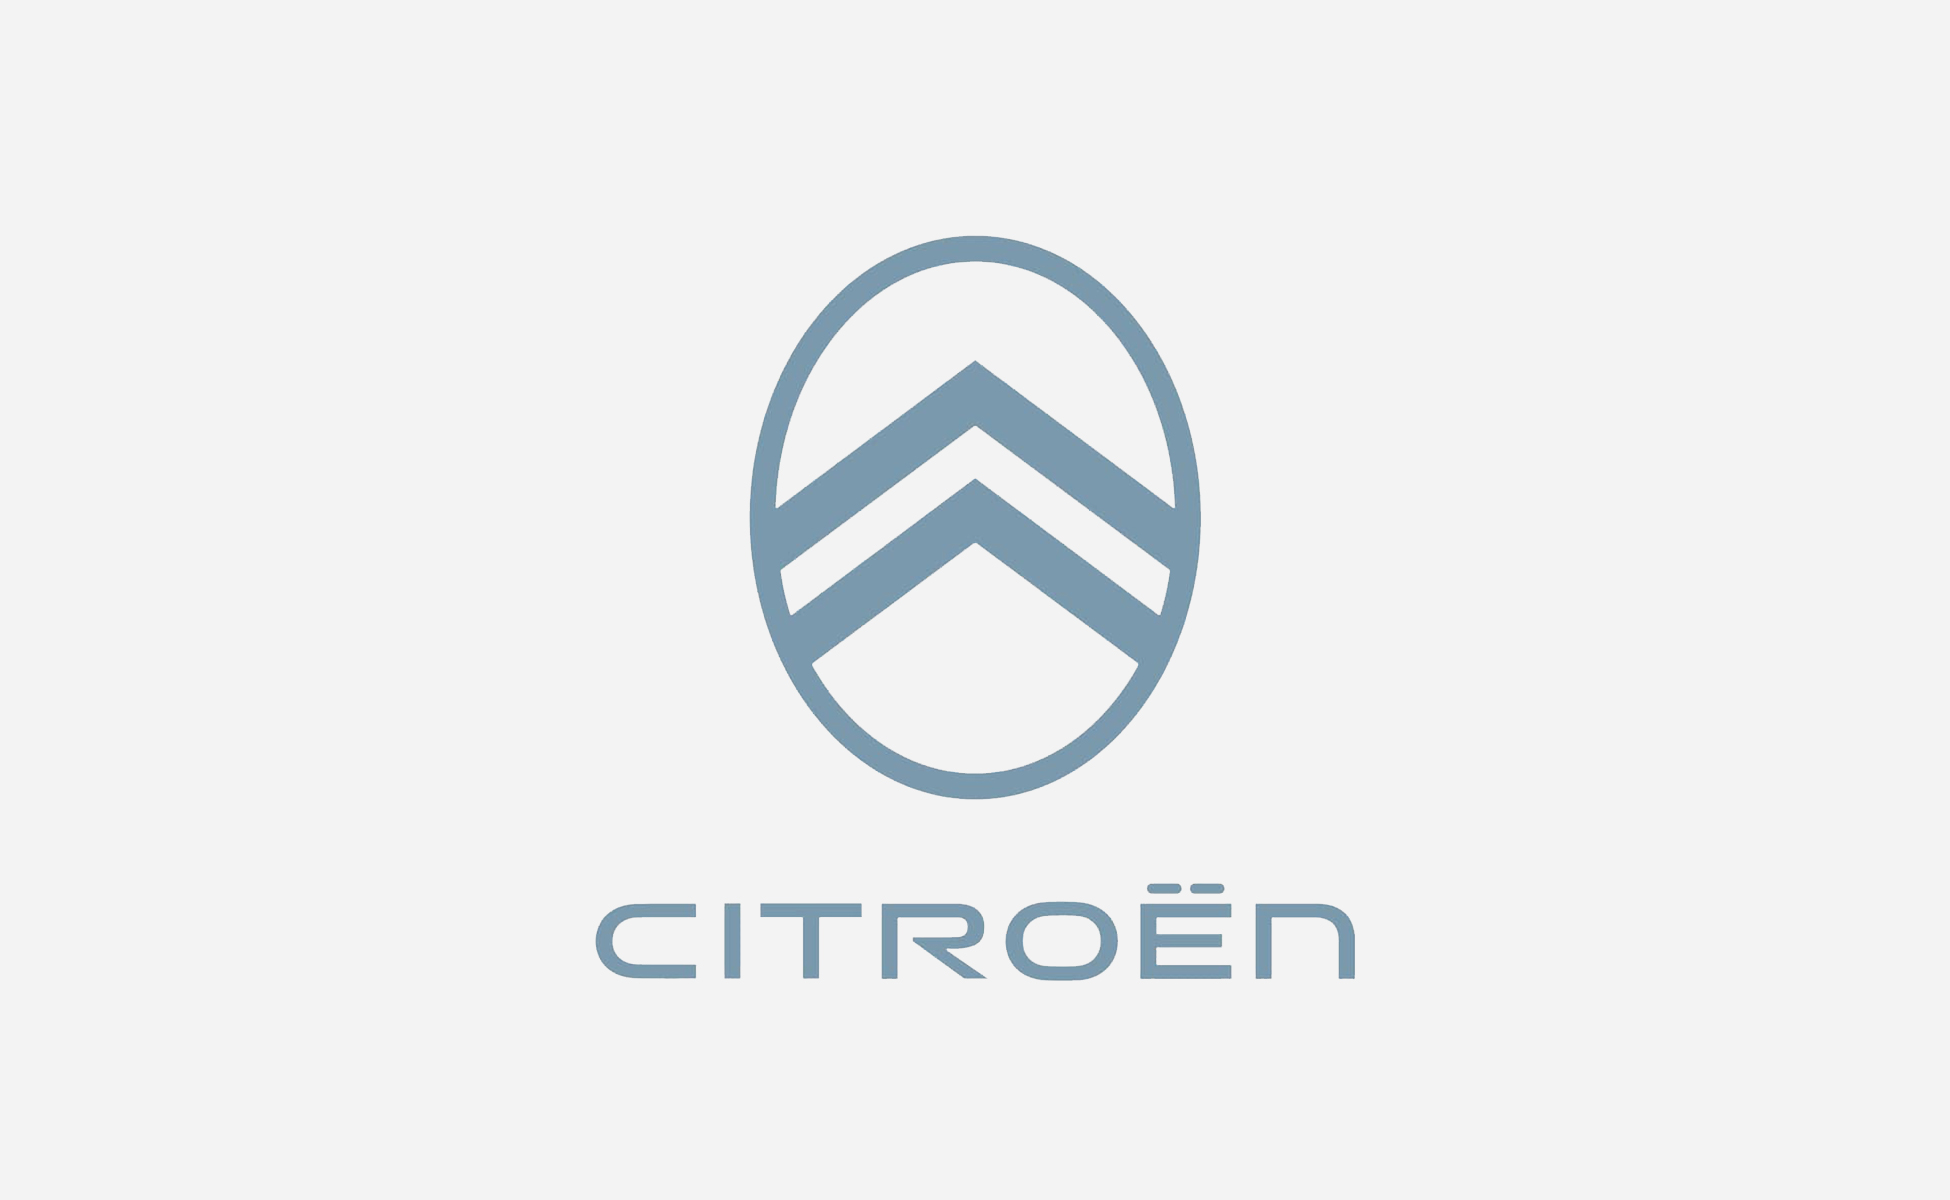 Pourquoi aime-t-on détester Citroën ?